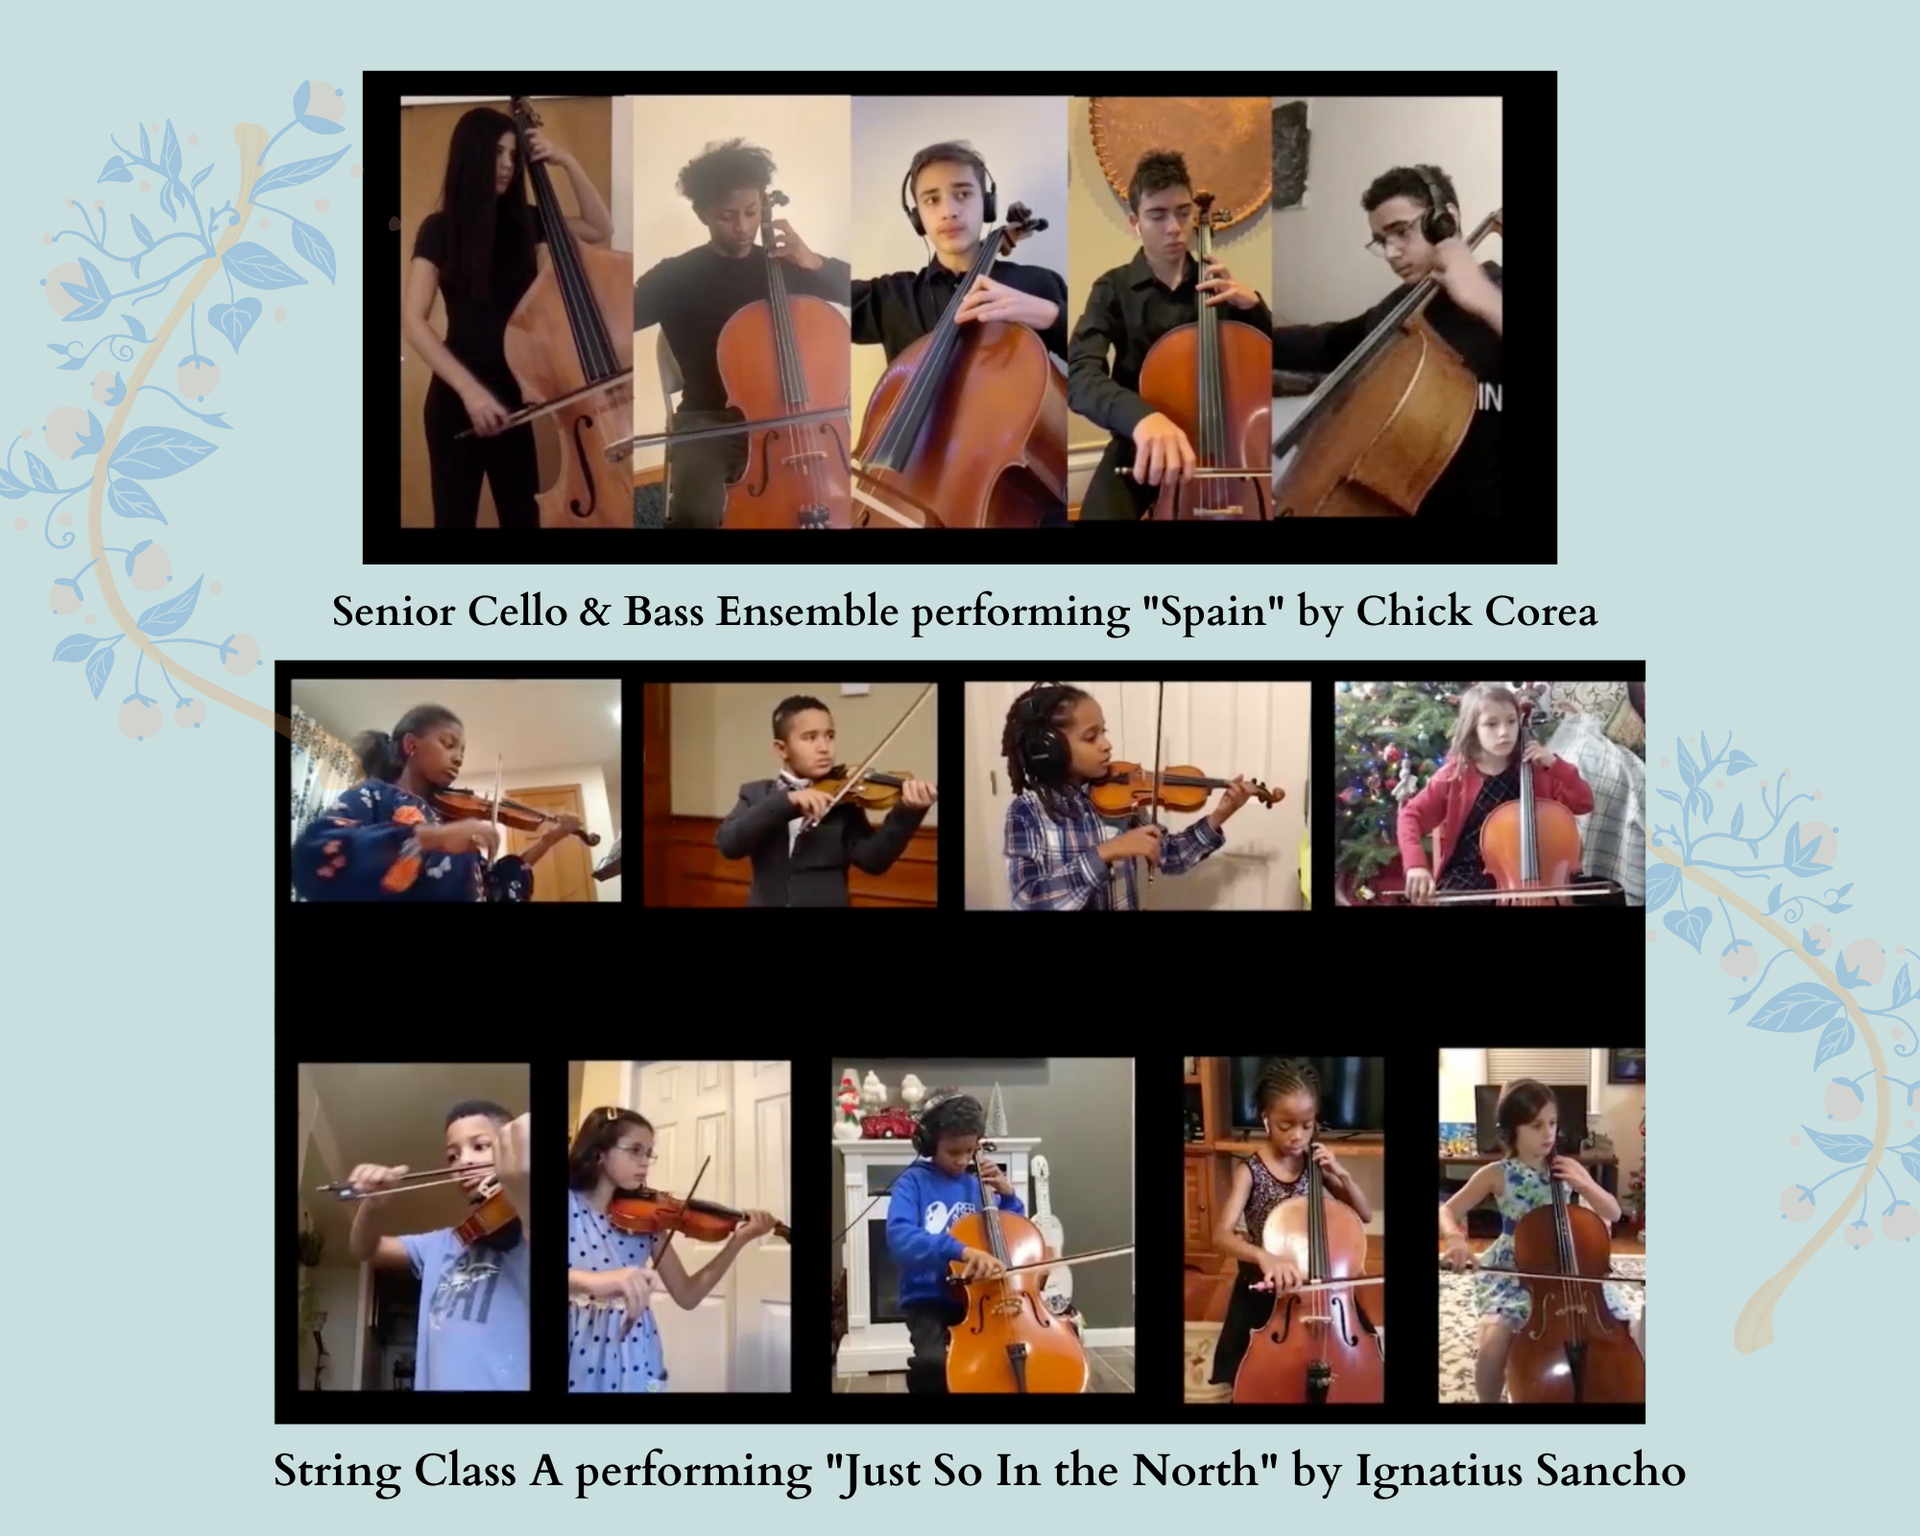 Senior Cello & Bass Ensemble